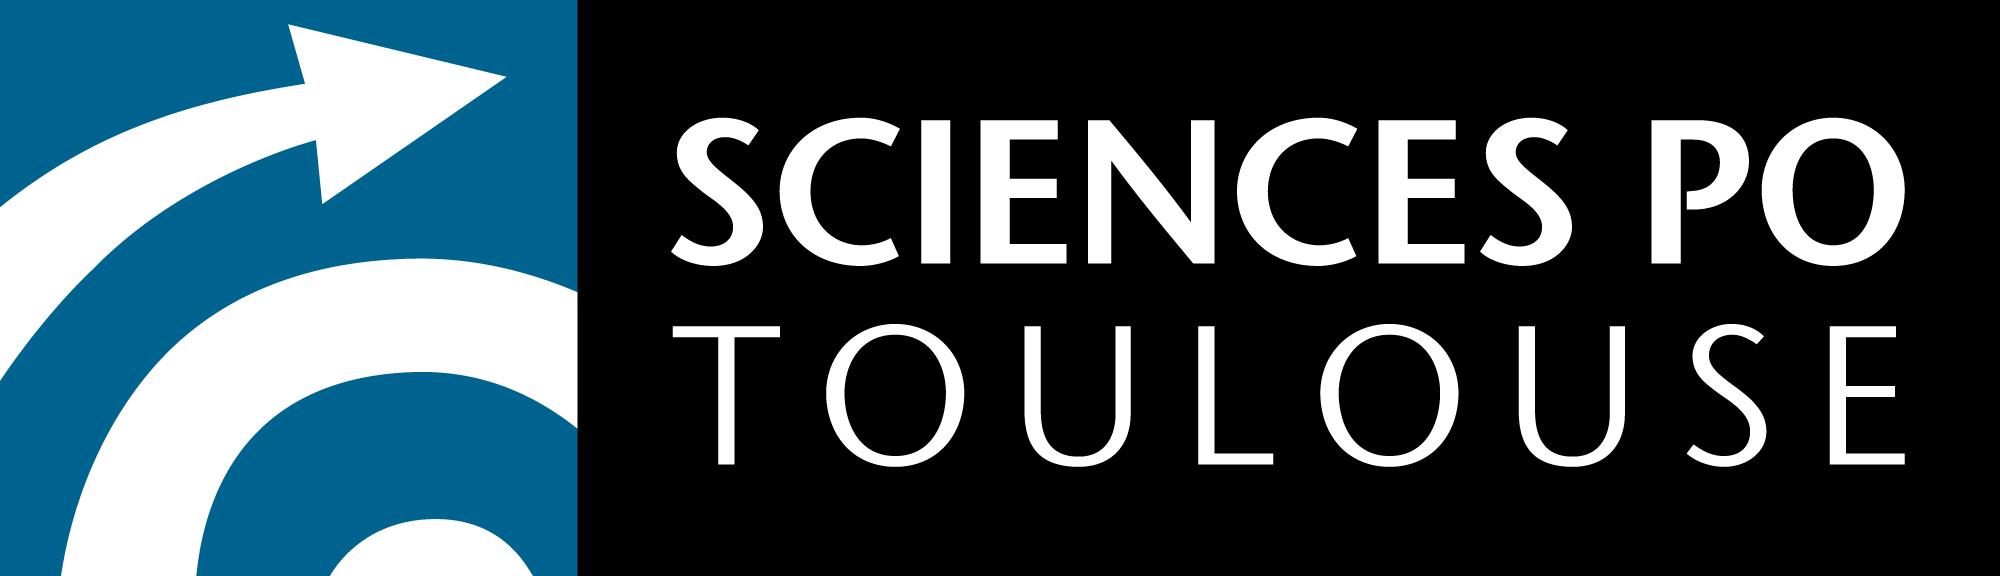 Sciences Politiques Toulouse logo